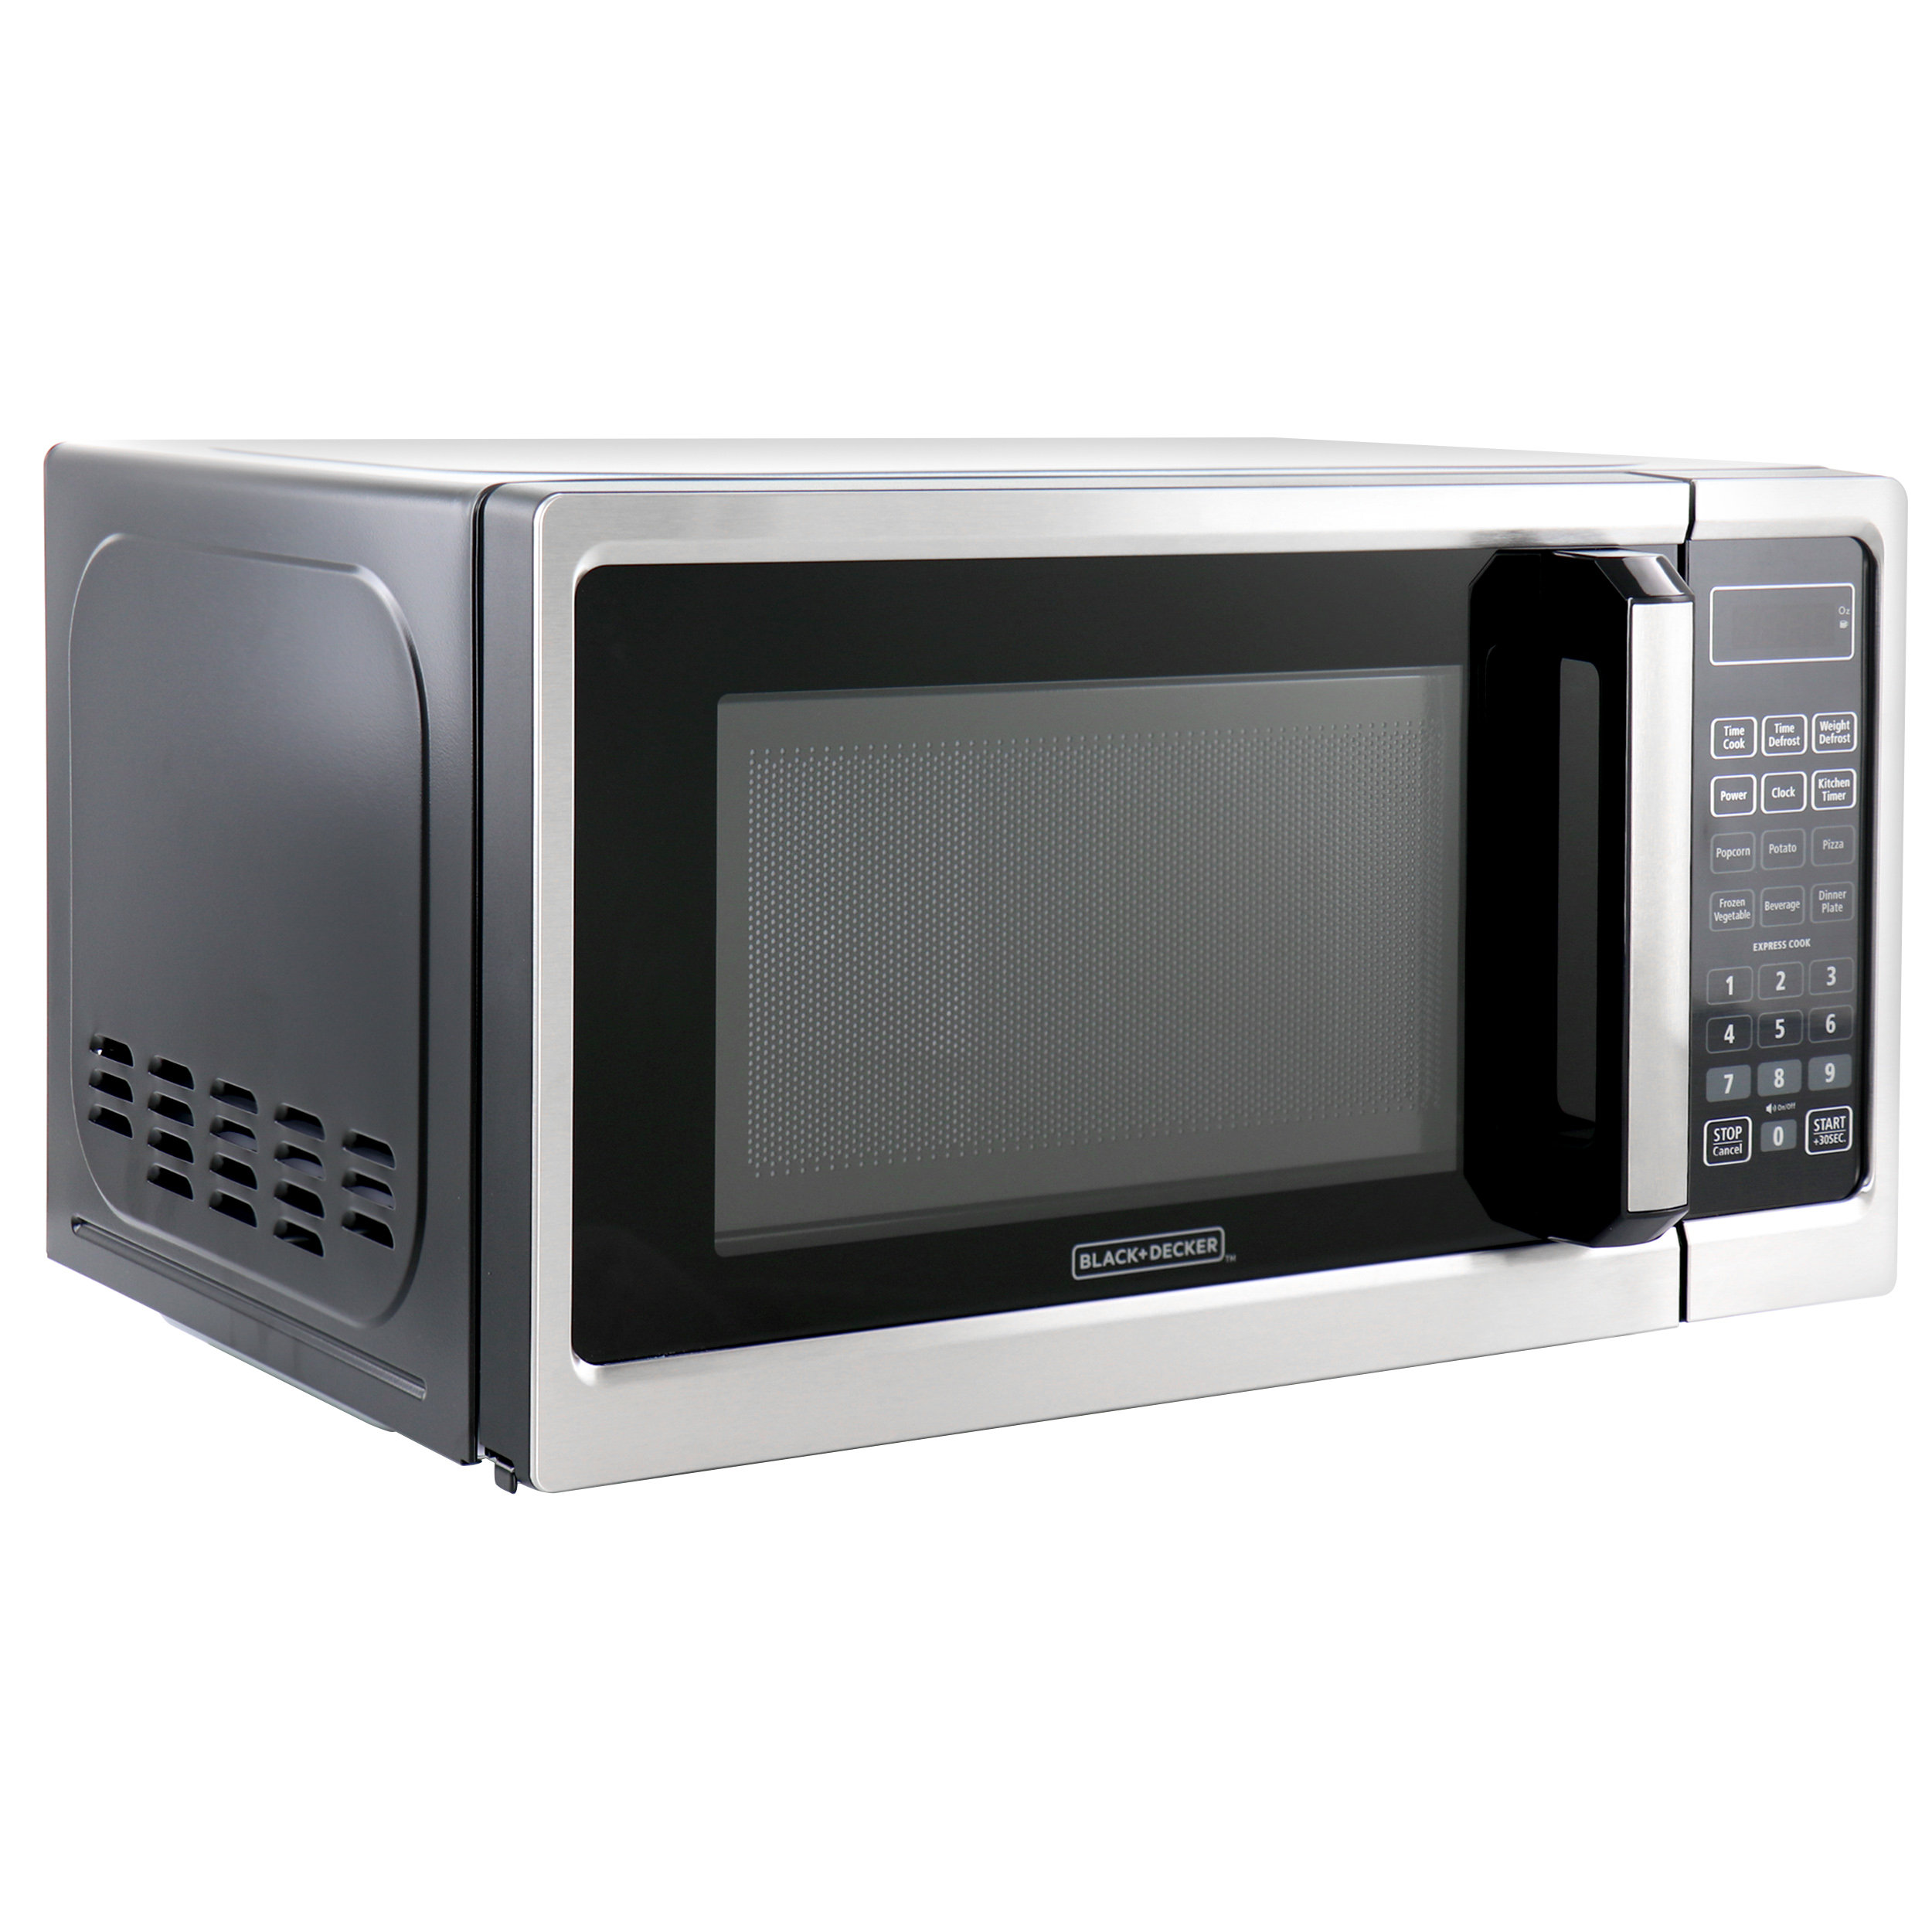 https://assets.wfcdn.com/im/34869717/compr-r85/2284/228407613/blackdecker-07-cubic-feet-countertop-microwave.jpg